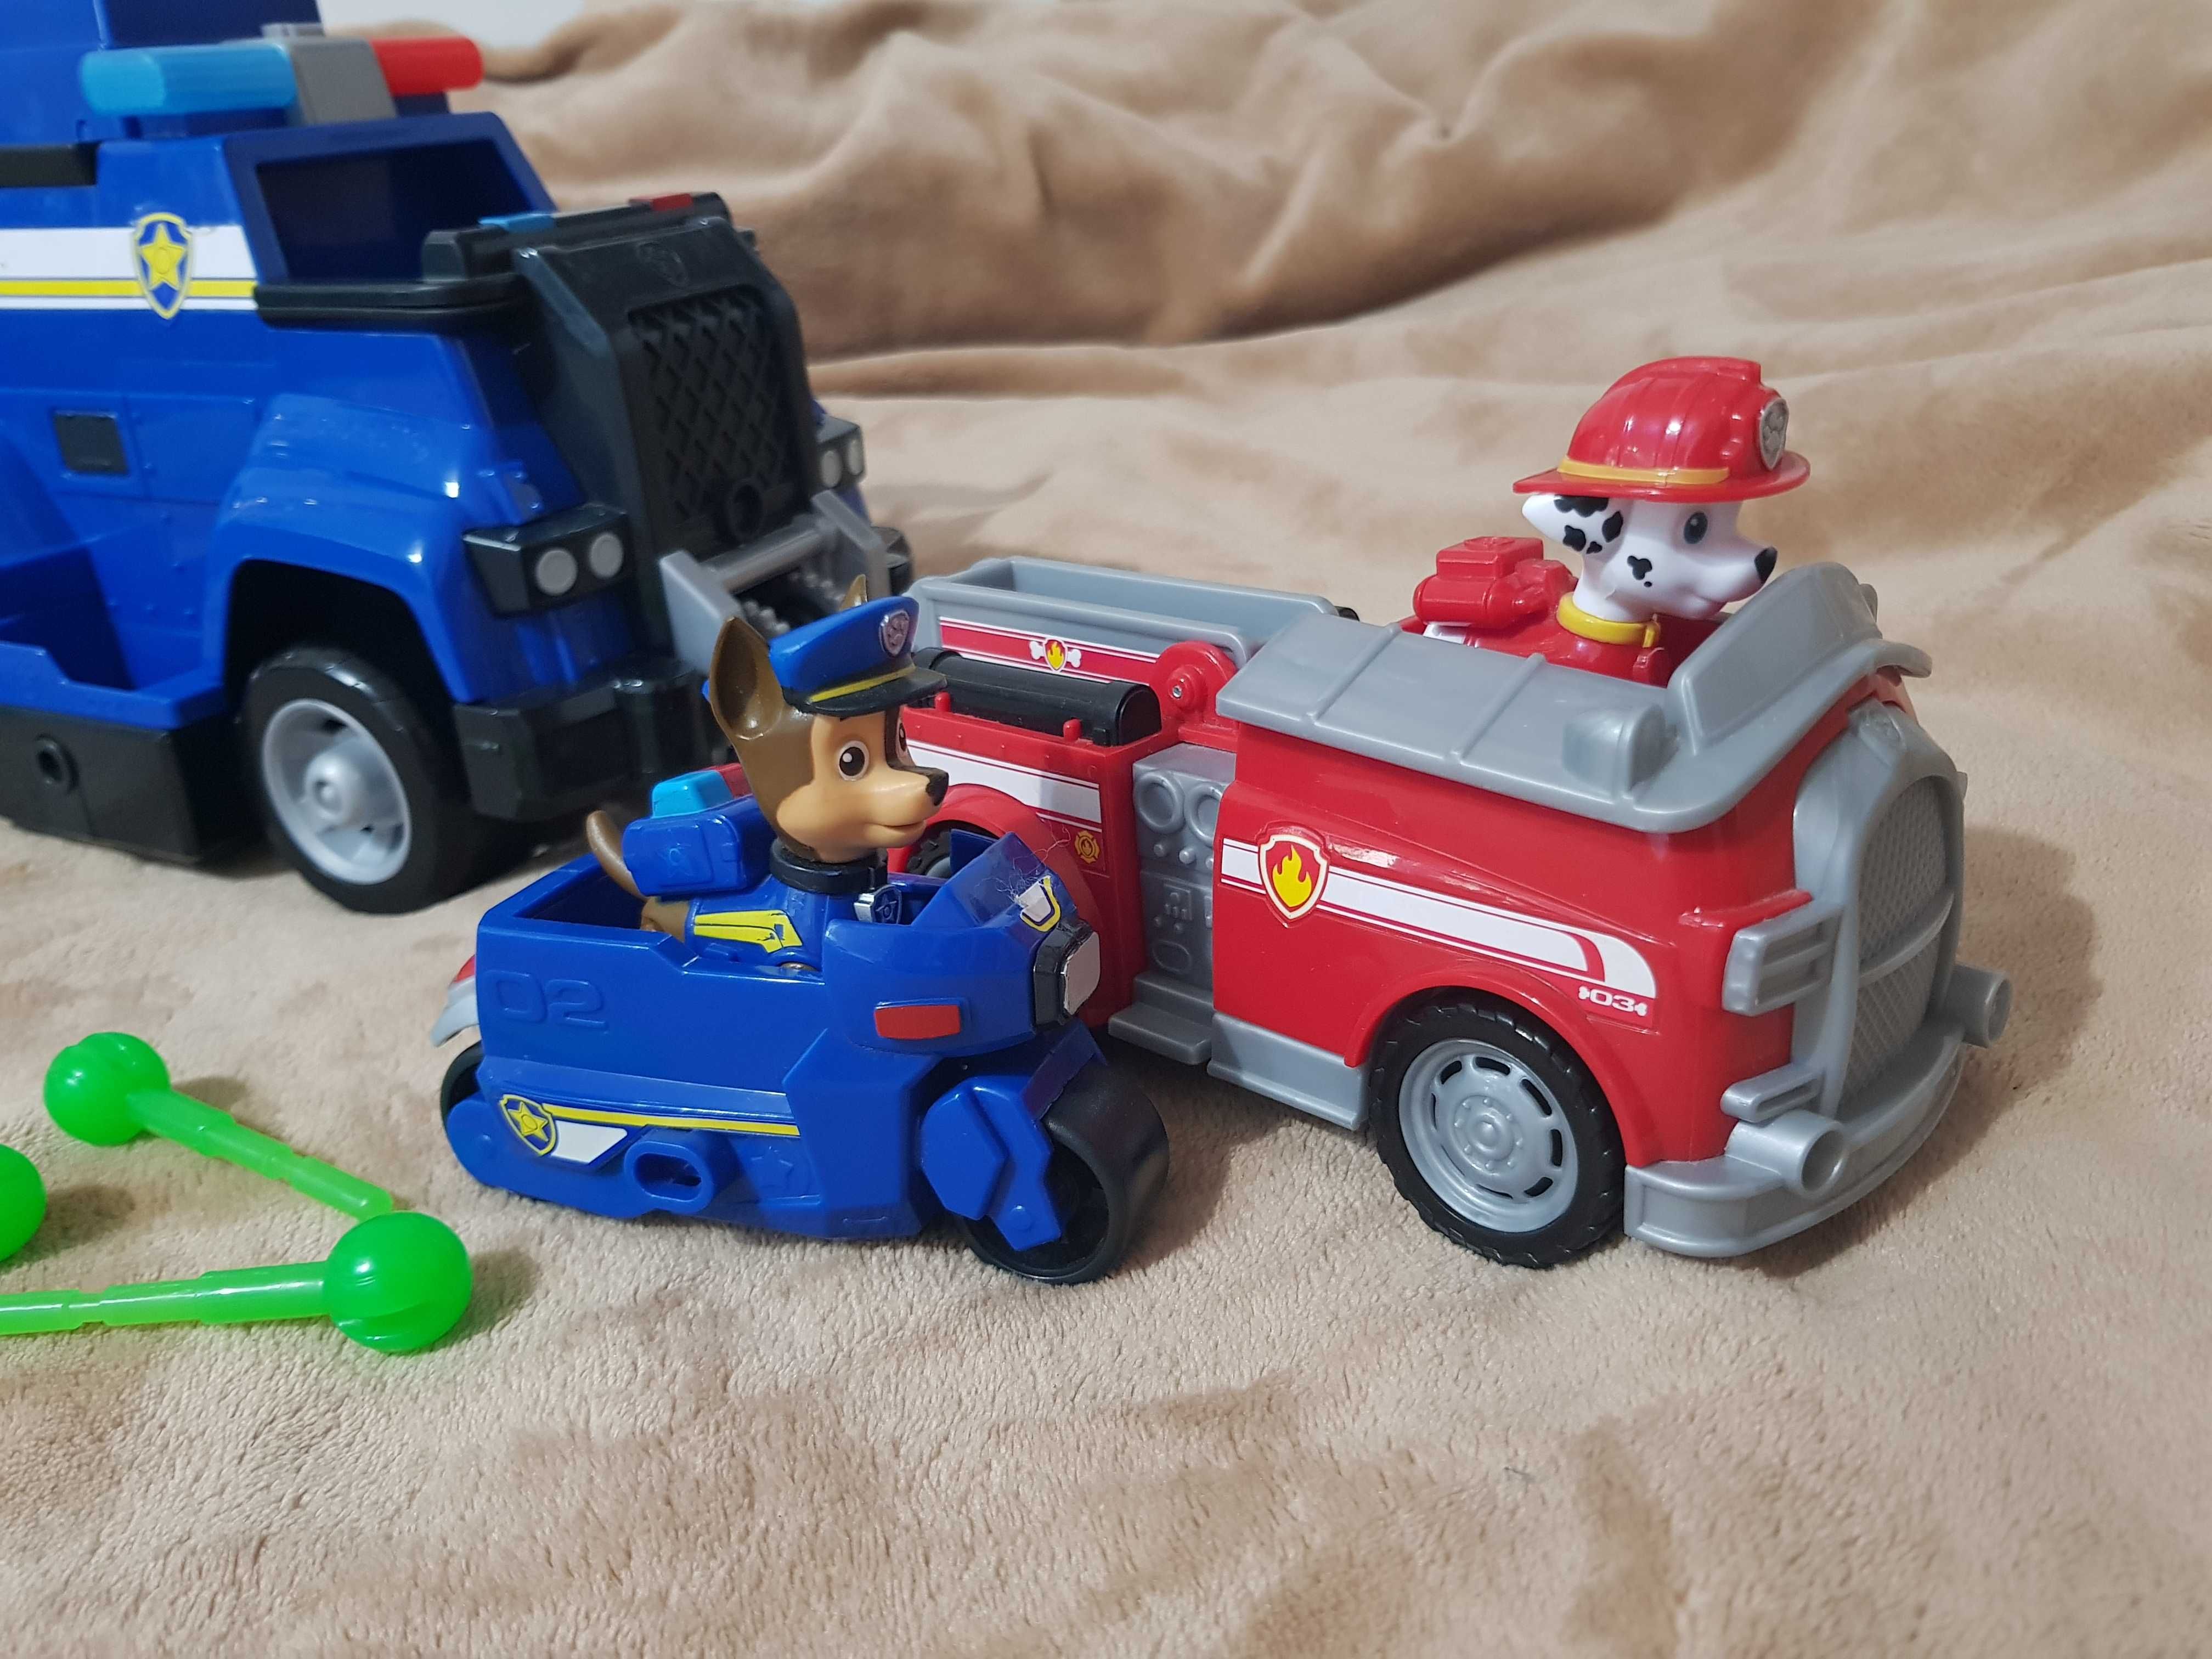 Masina de politie Paw Patrol + Masina de pompieri + Figurine